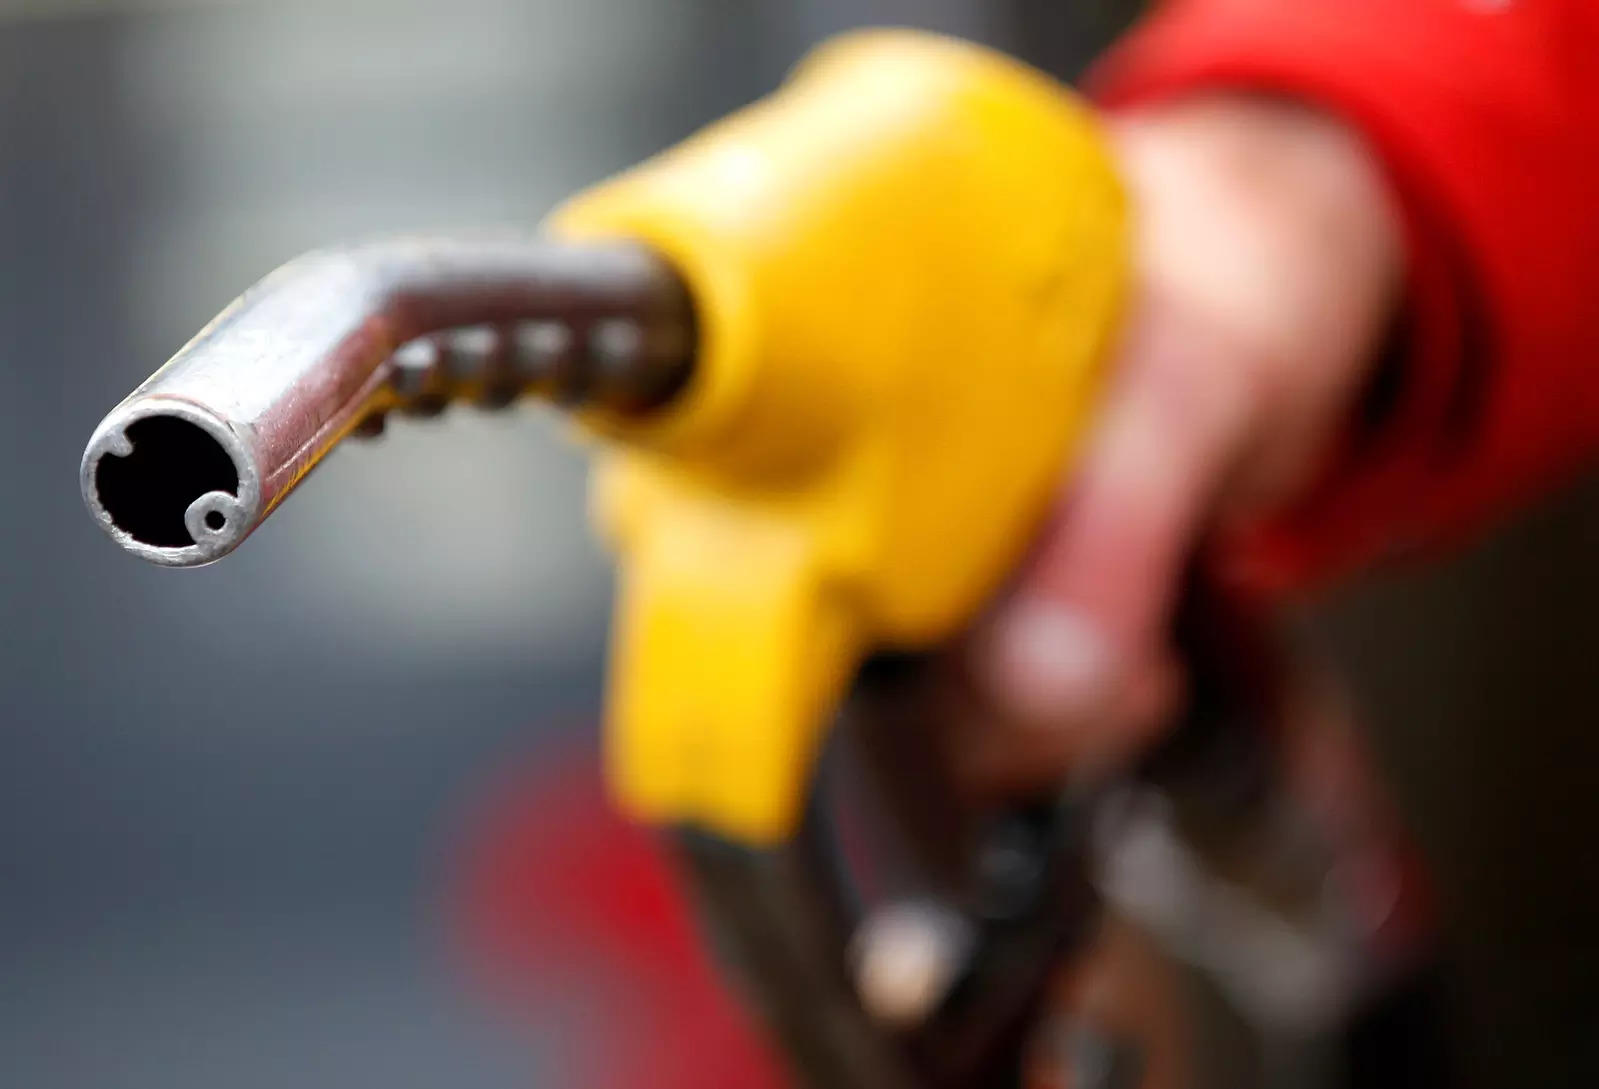 Petrol, diesel prices at new highs; petrol crosses Rs 87 mark in Delhi